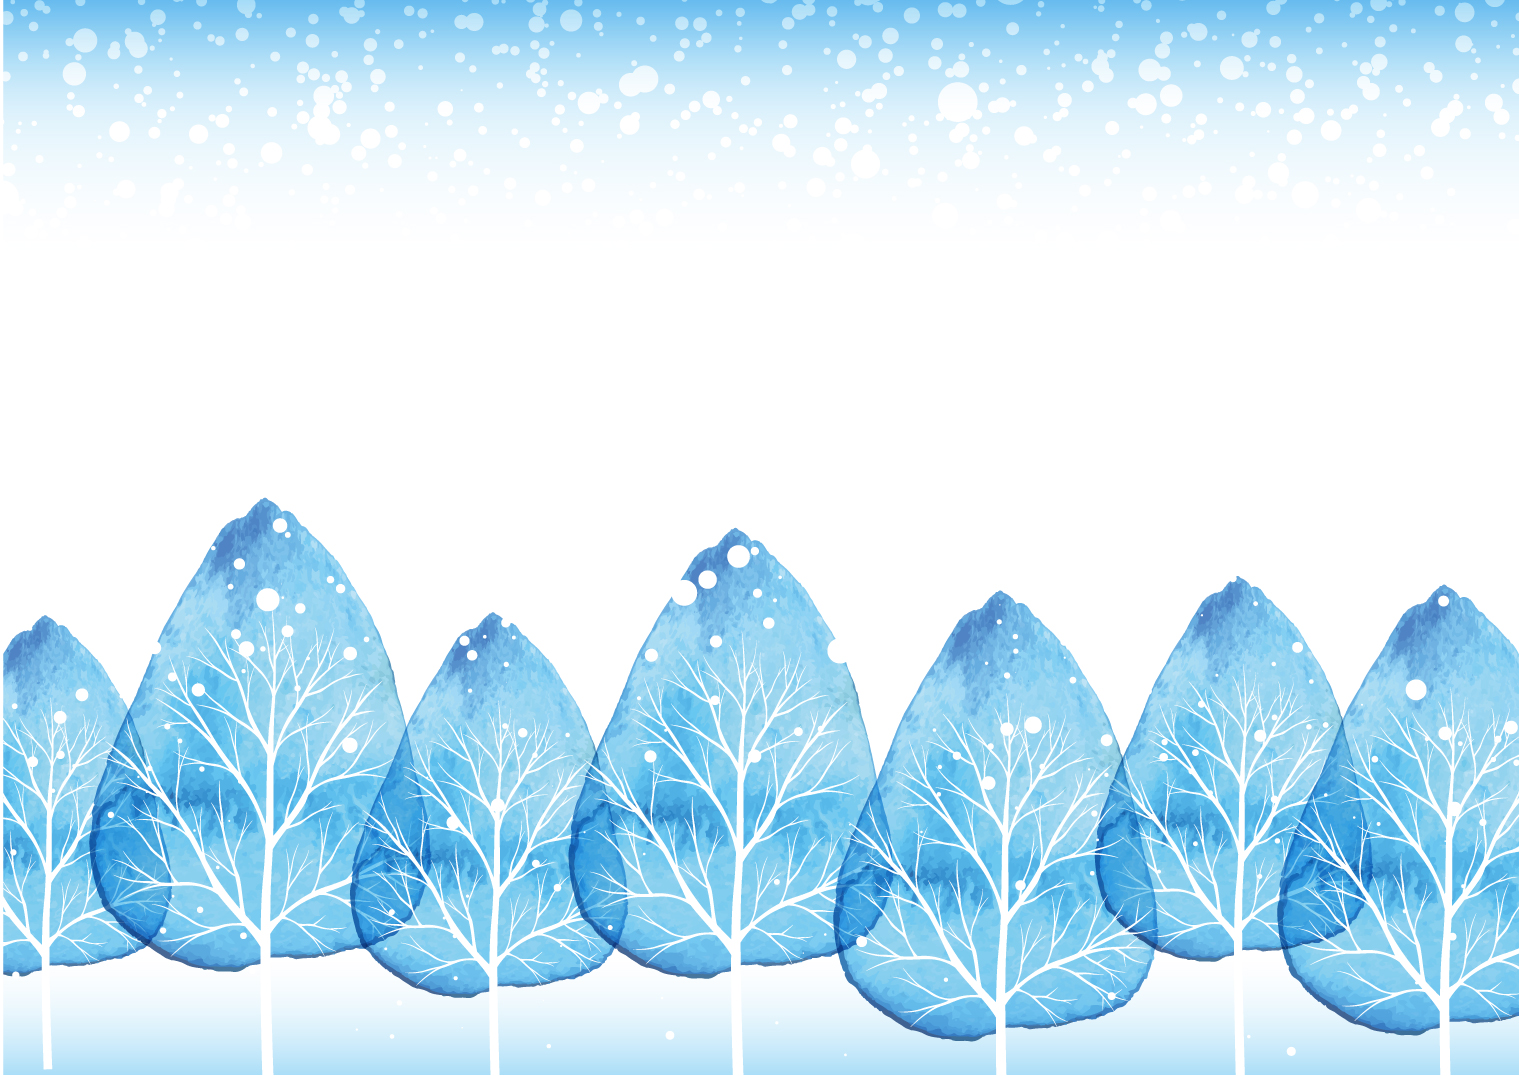 ＜2月13日＞冬の自然を楽しもう！びわこ文化公園「しまっちとしぜんとあそぼ in winter」が開催されます